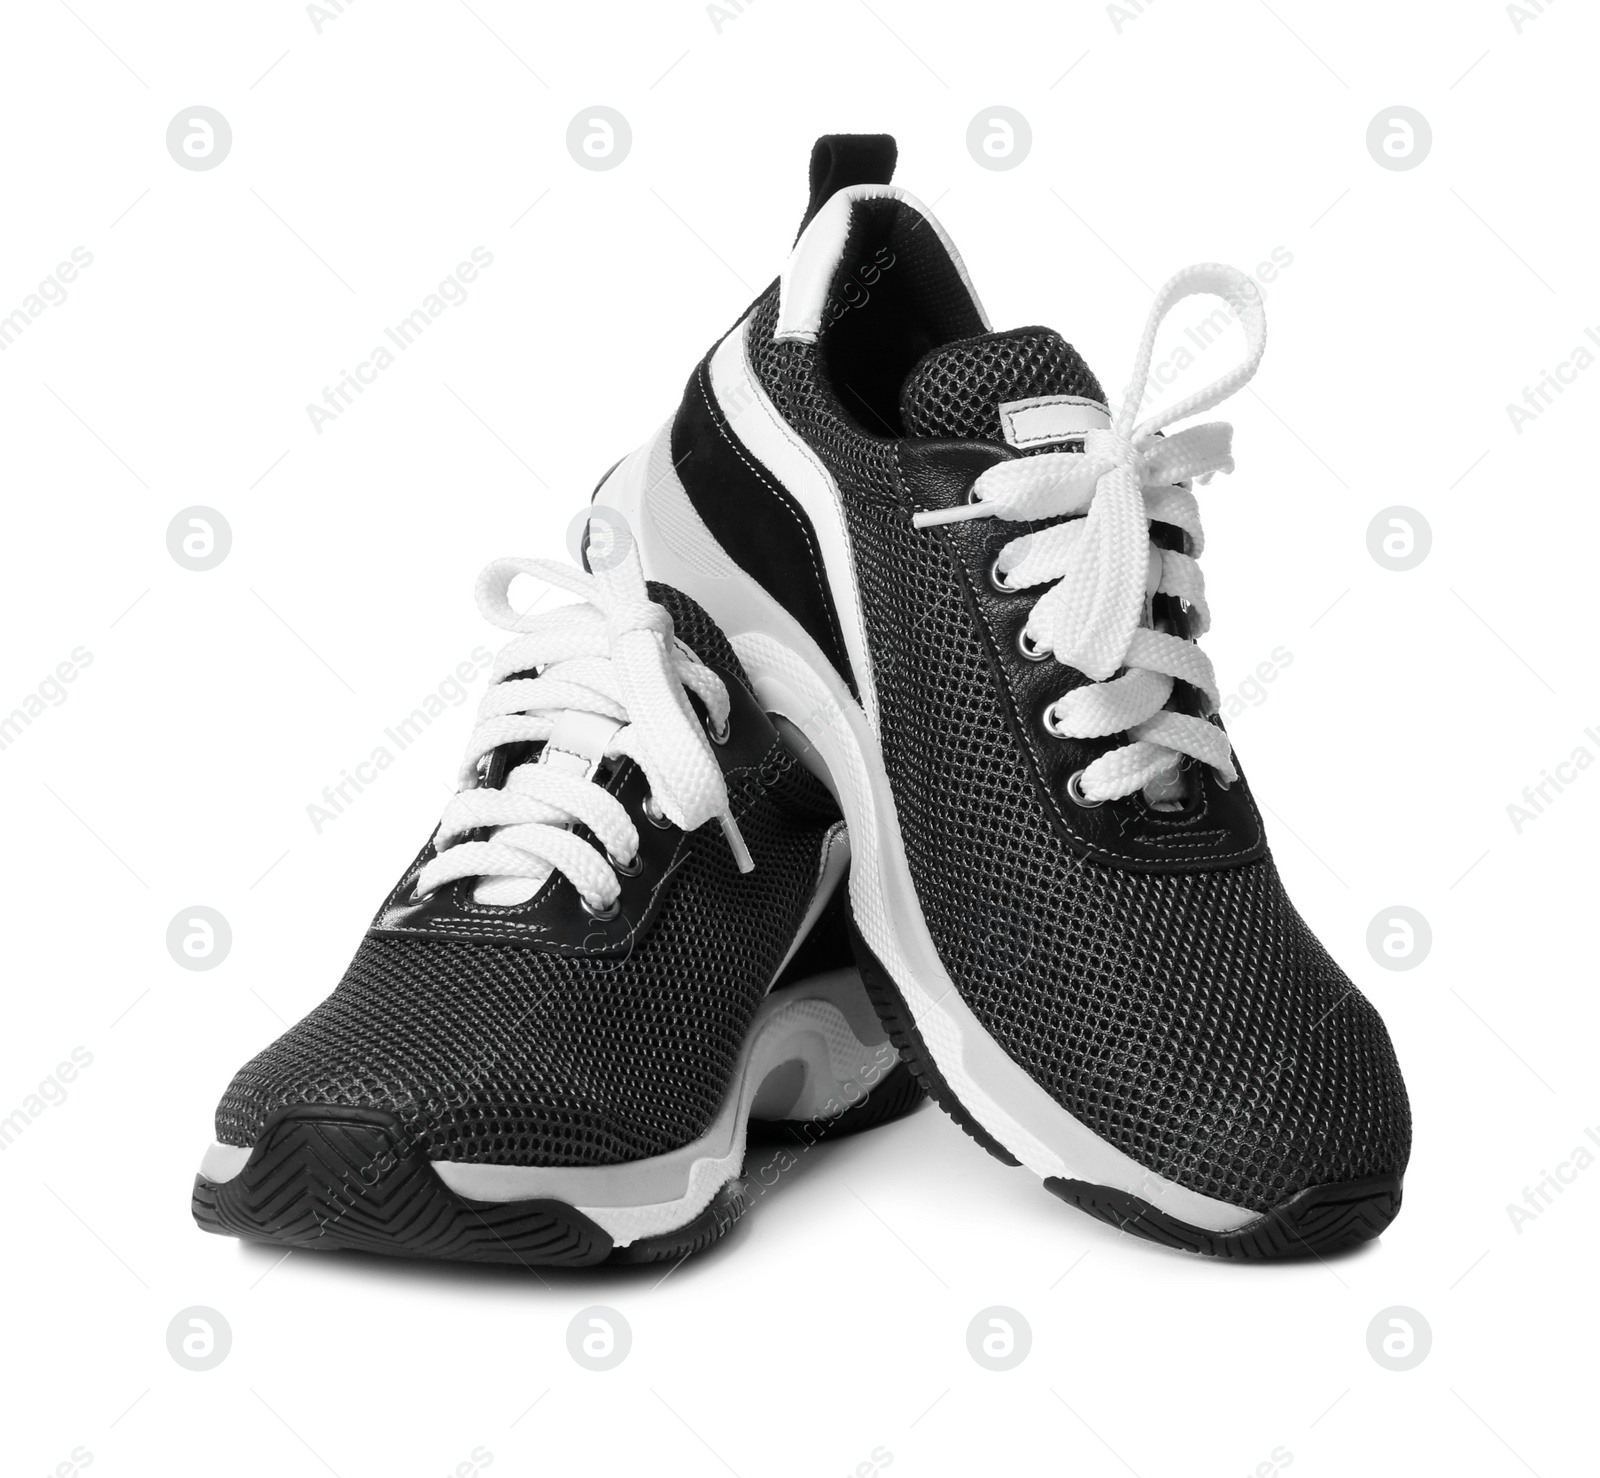 Photo of Pair of stylish modern training shoes on white background